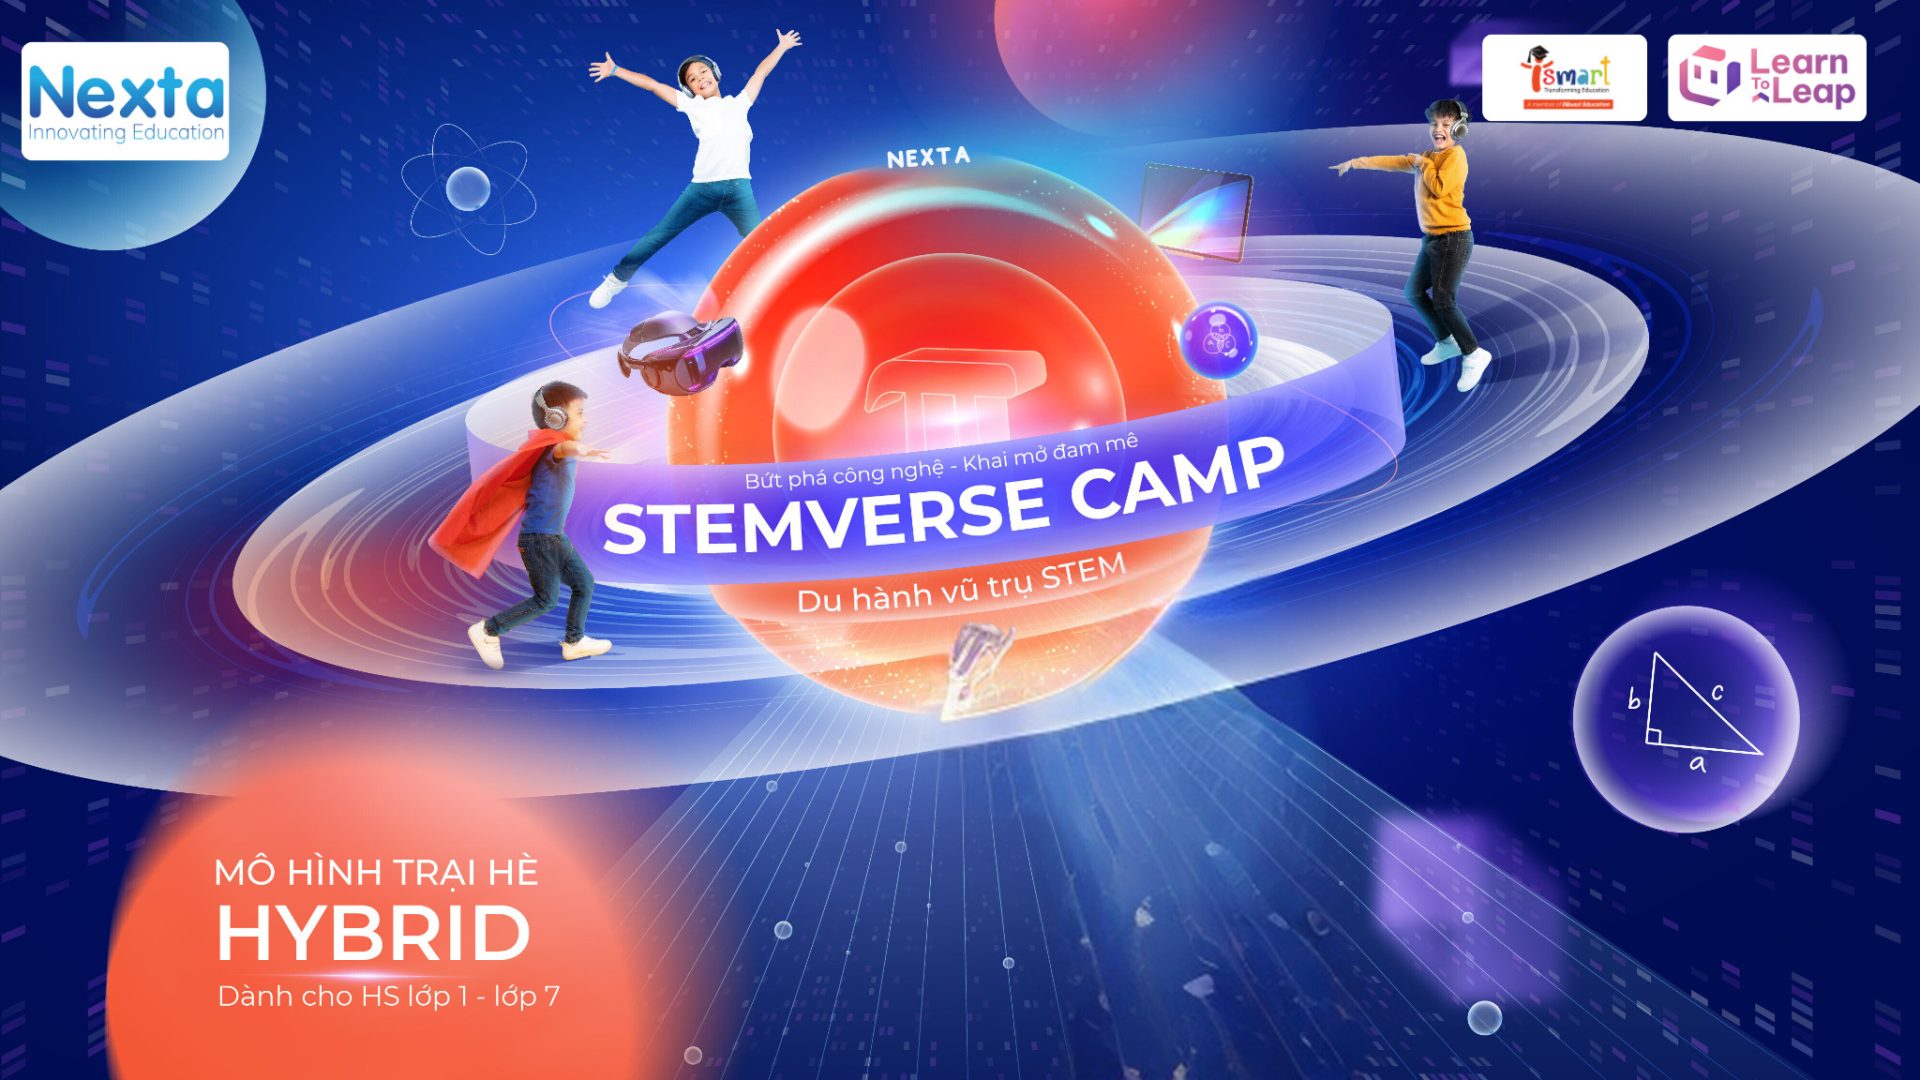 STEMVERSE CAMP 2024 – “Du hành vũ trụ STEM” cùng Nexta!